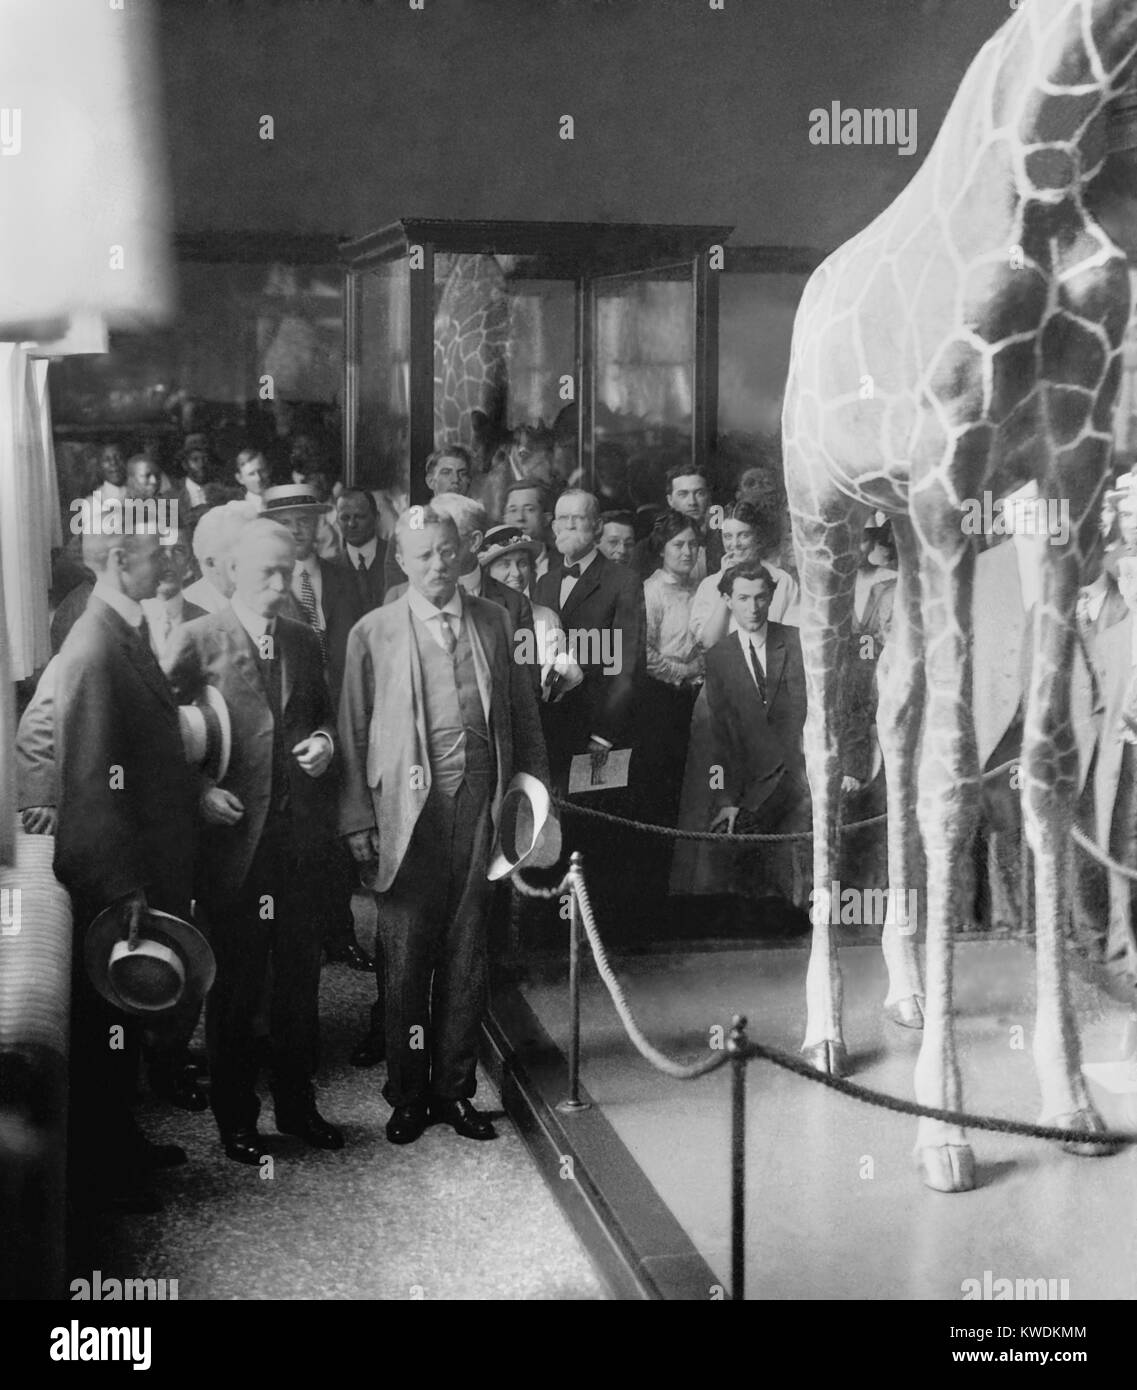 Oberst Theodore Roosevelt an einer Zeremonie an National Museum, C. 1914-1917. Jetzt das Smithsonian Museum of Natural History nannte es hält Roosevelts East African Flora und Fauna Proben während der Smithsonian - Roosevelt African Expedition von 1909-10 (BSLOC 2017 8 69) Stockfoto